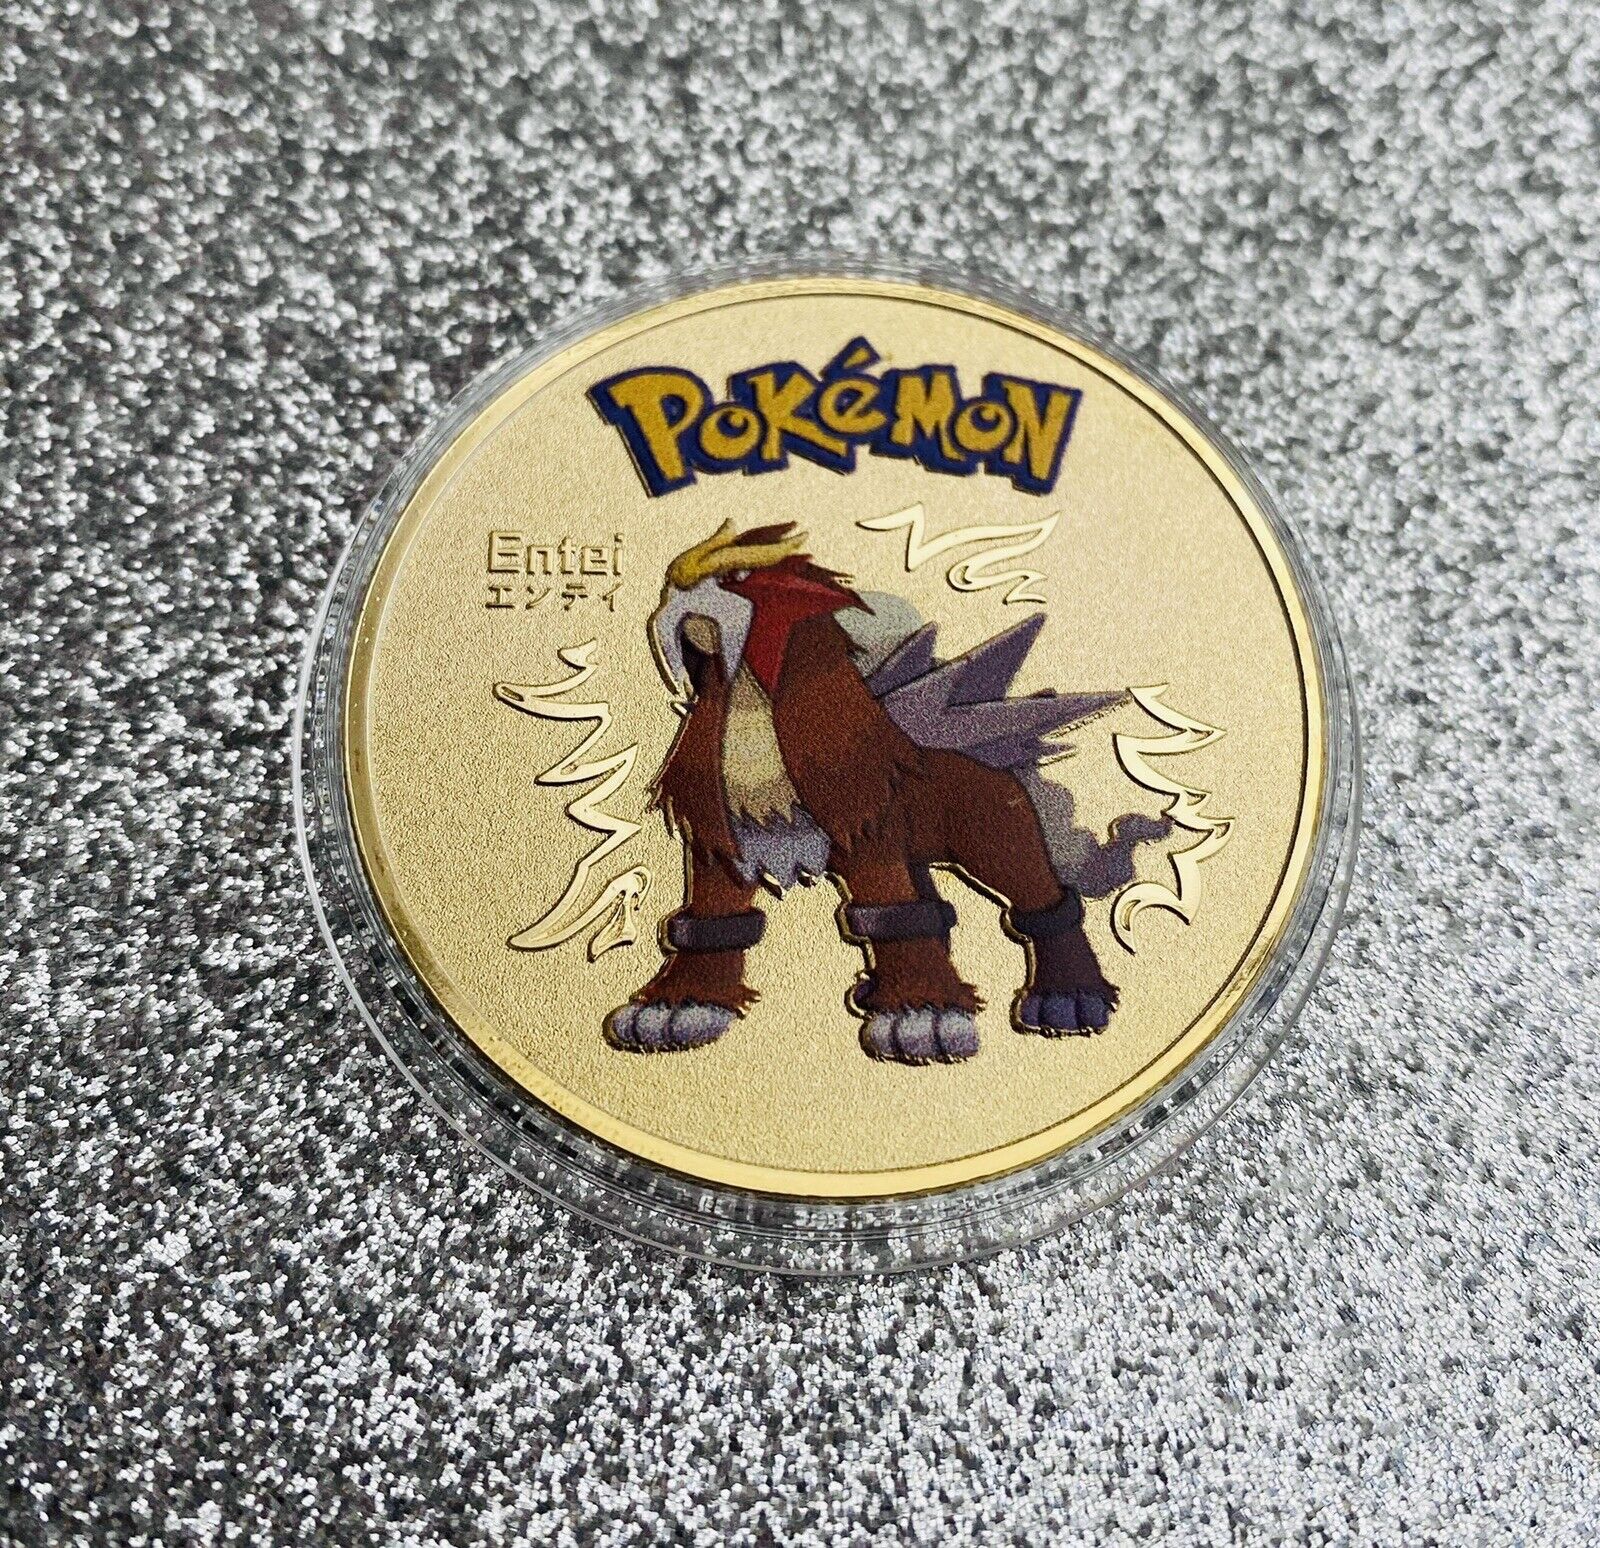 Pokemon Entei Gold Collectible Coin Card Gift Souvenir Rare Pokemon Rare Coin